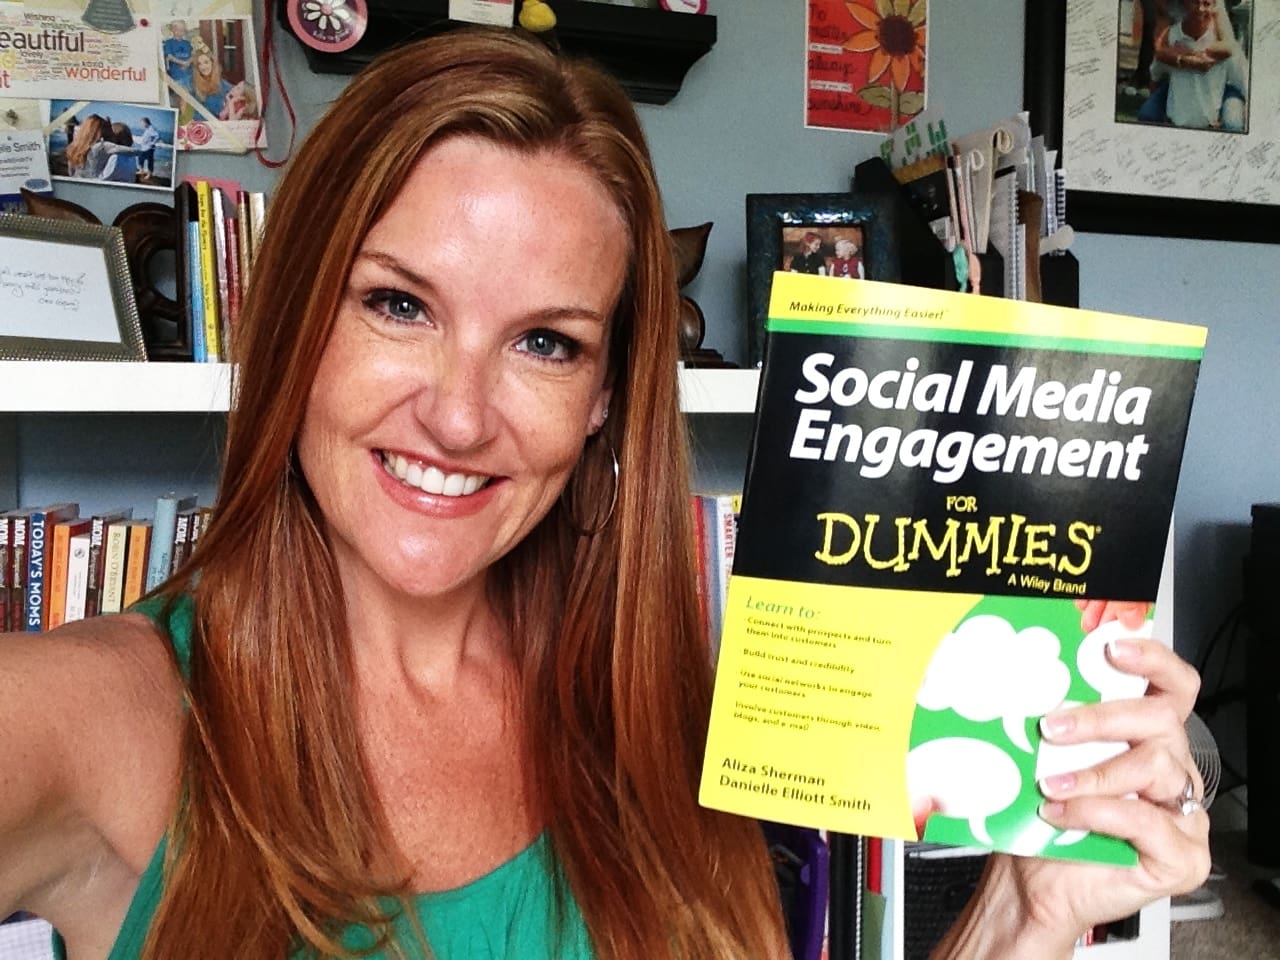 Social Media Engagement for Dummies - Danielle Elliott Smith